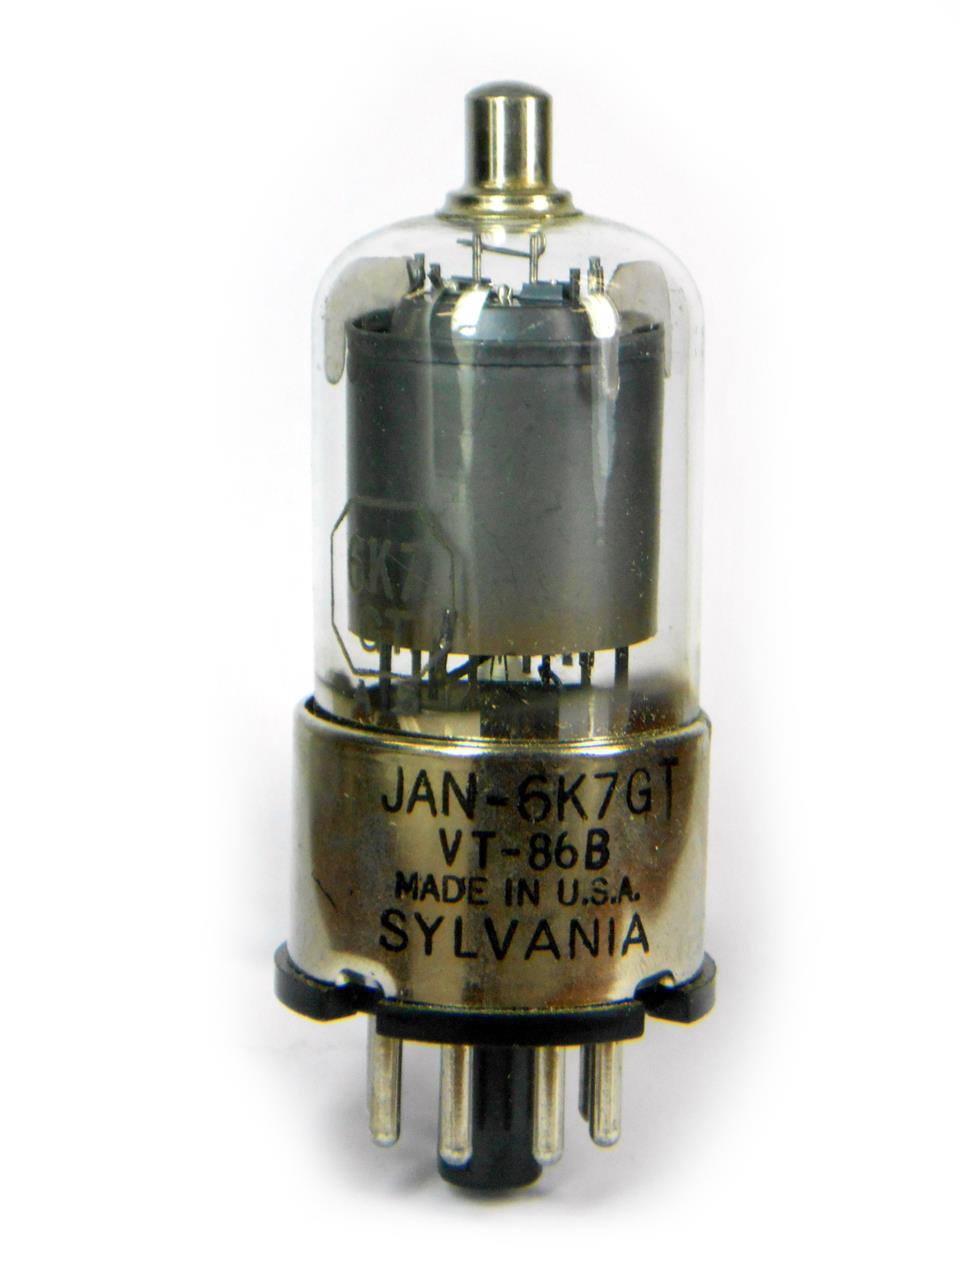 Válvulas eletrônicas pentodo amplificadoras com base octal de 8 pinos - Válvula 6K7GT Sylvania